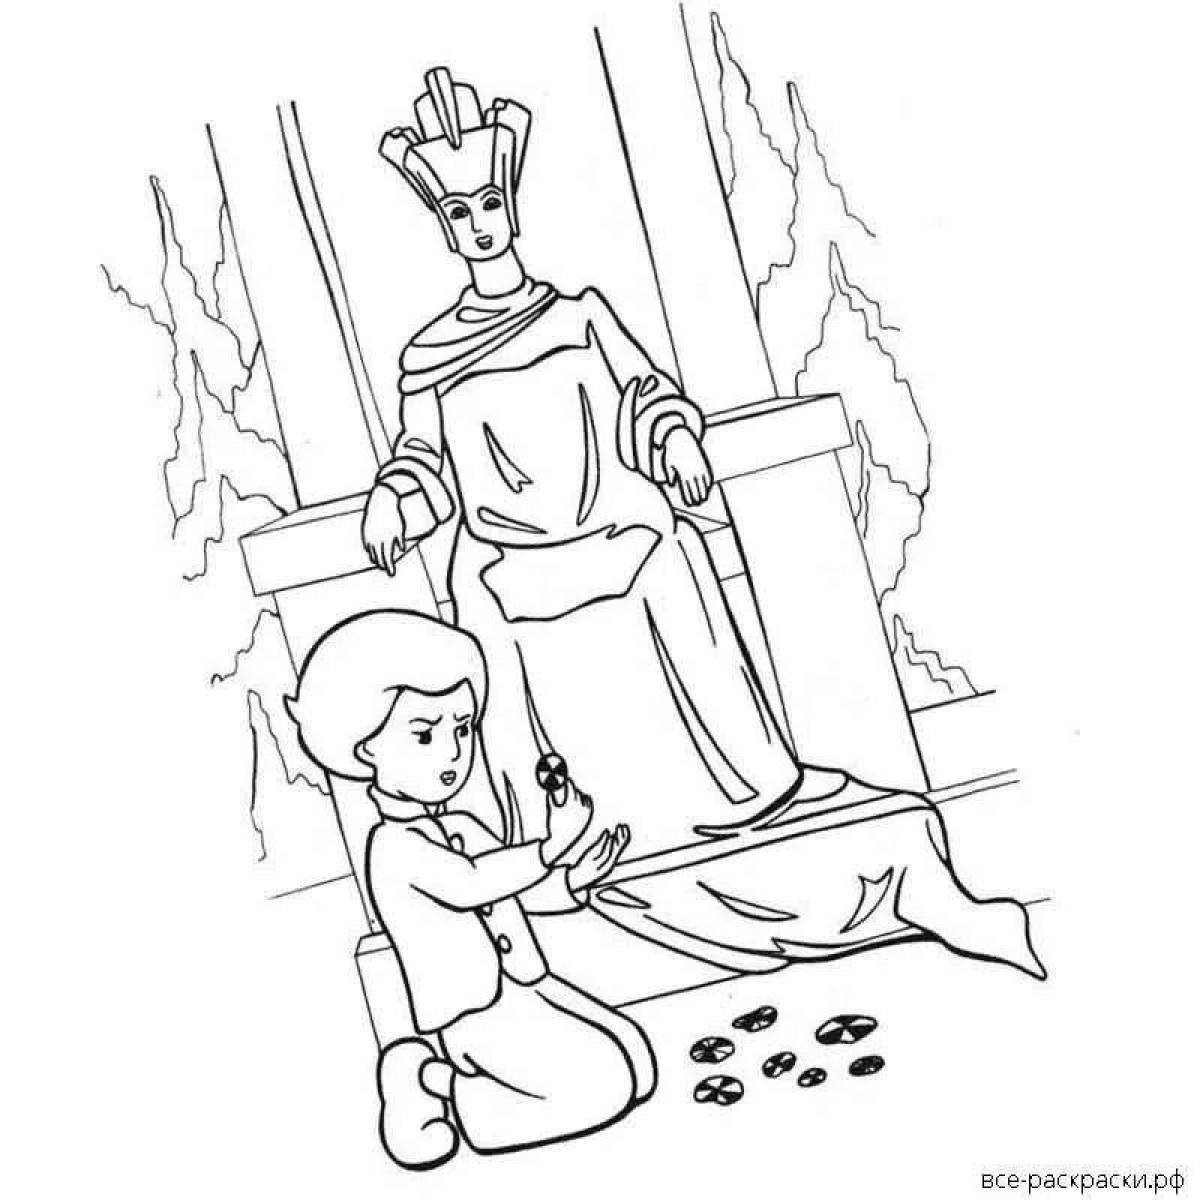 Нарисовать иллюстрацию к сказке снежная королева